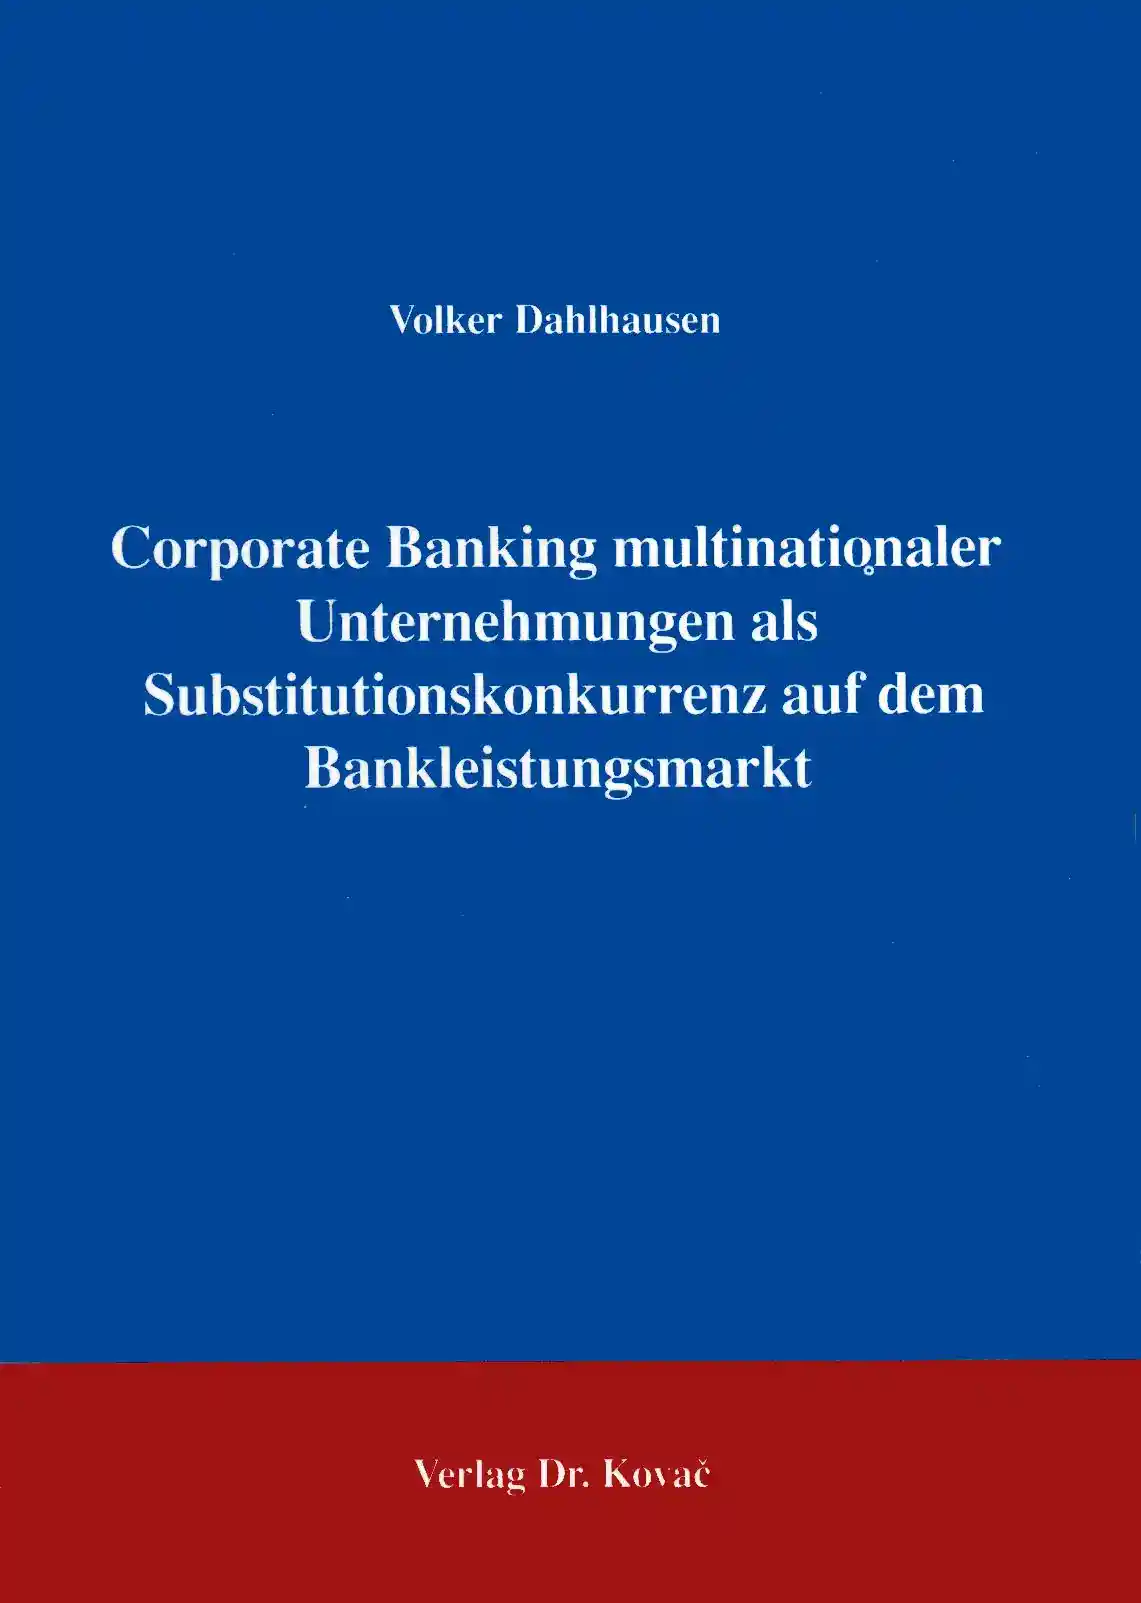 Corporate Banking multinationaler Unternehmungen als Substitutionskonkurrenz auf dem Bankleistungssektor (Forschungsarbeit)